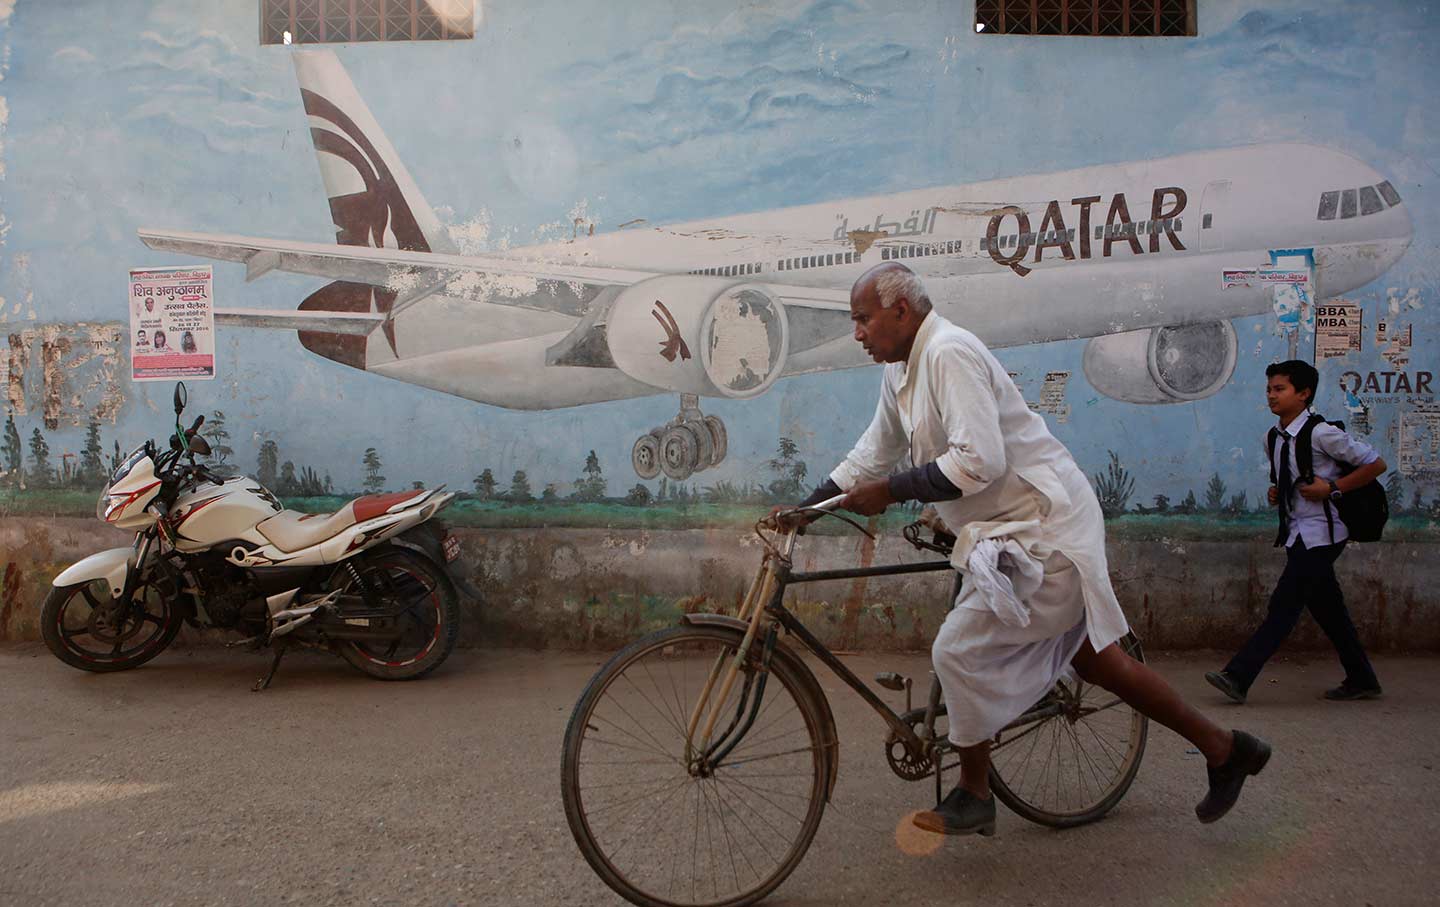 Qatar Airways advertisement in Nepal